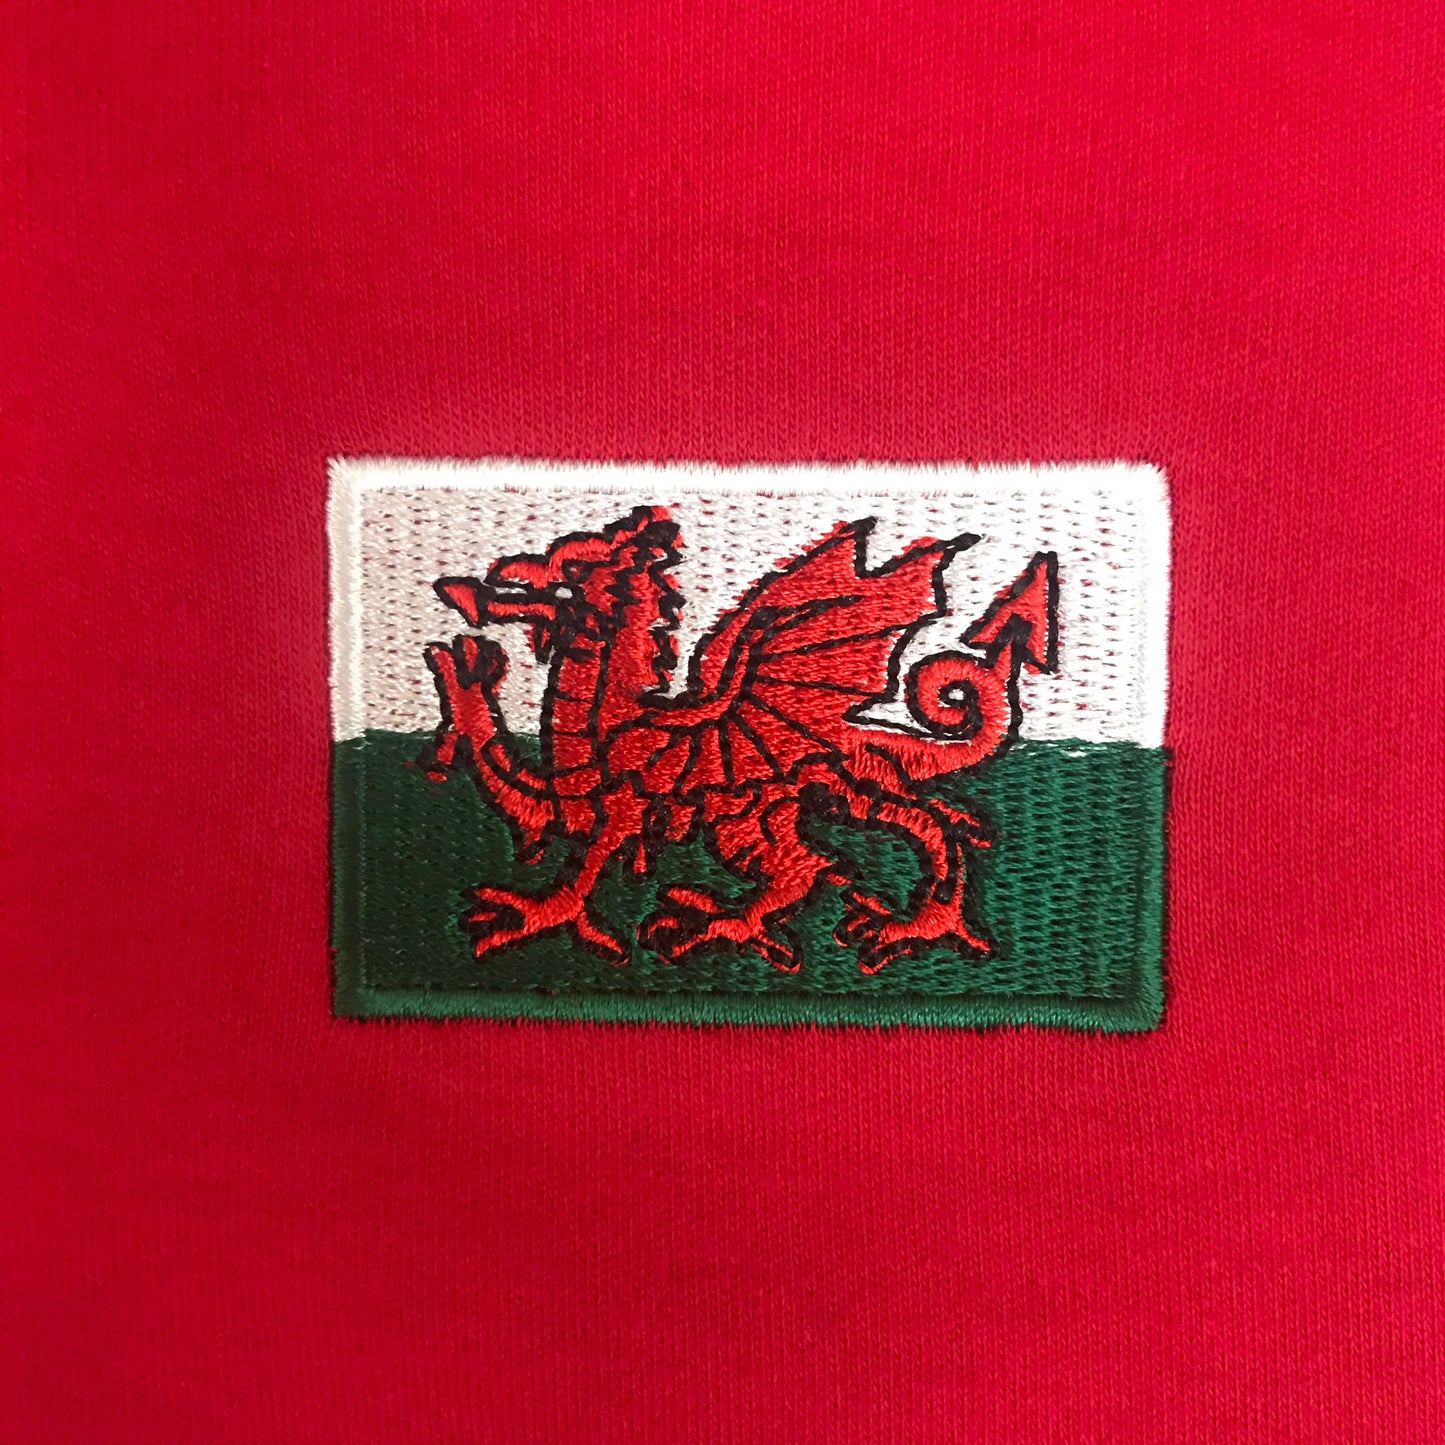 Ladies short sleeve Cymru rugby shirt